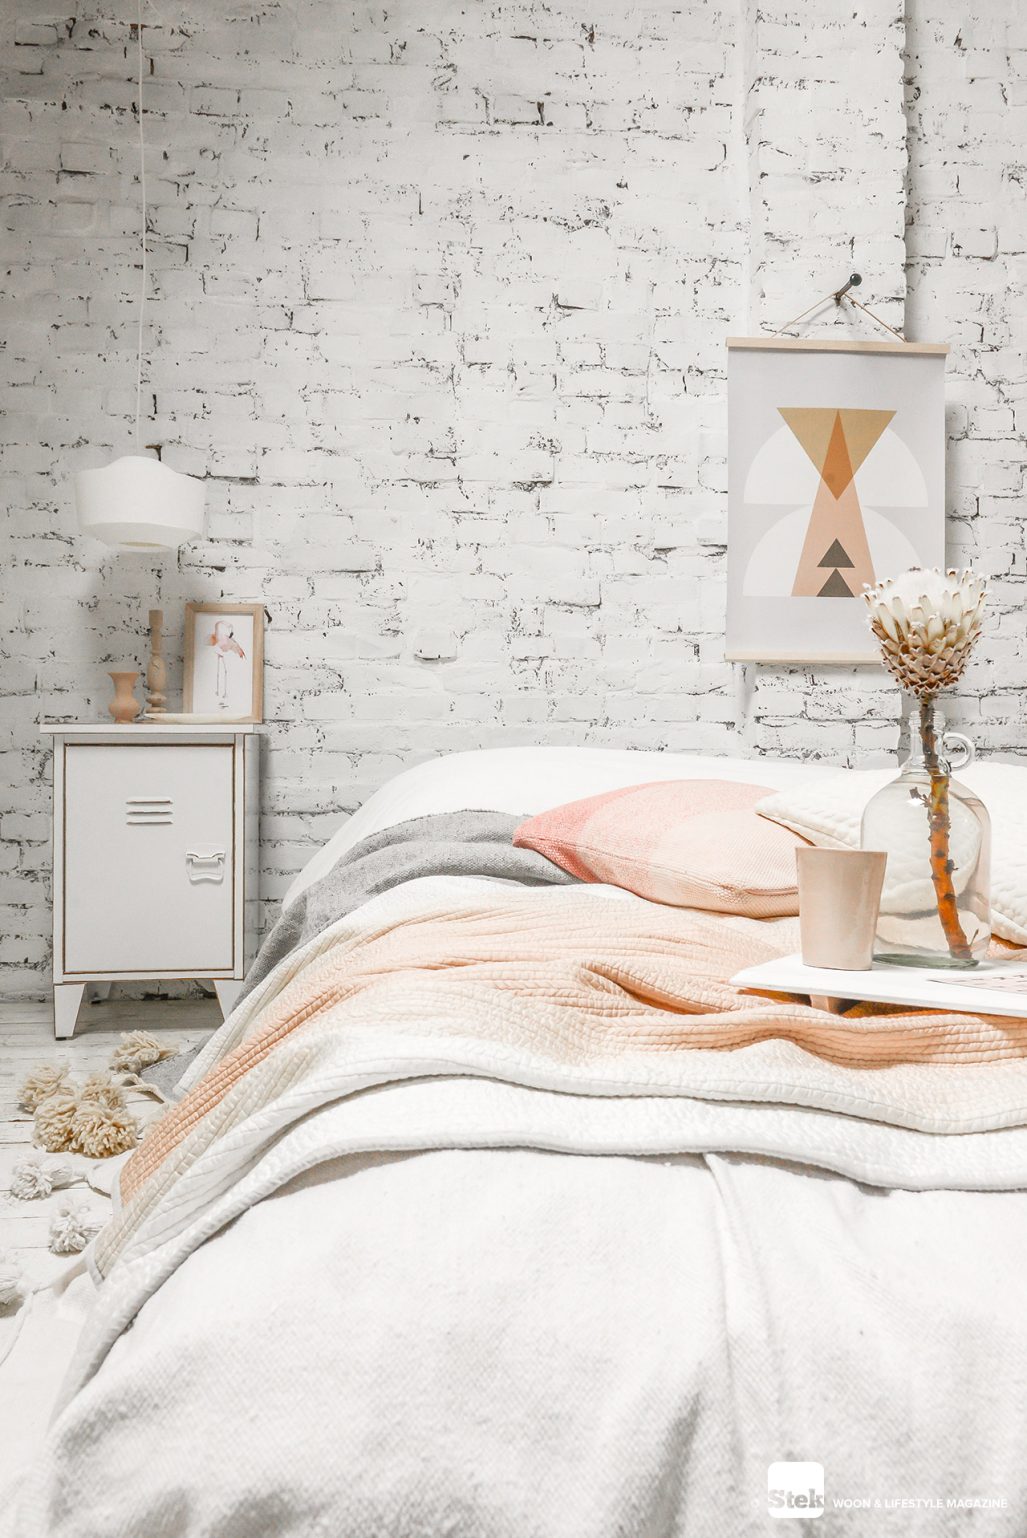 Slaapkamer warm houden tips | Smulders textiel